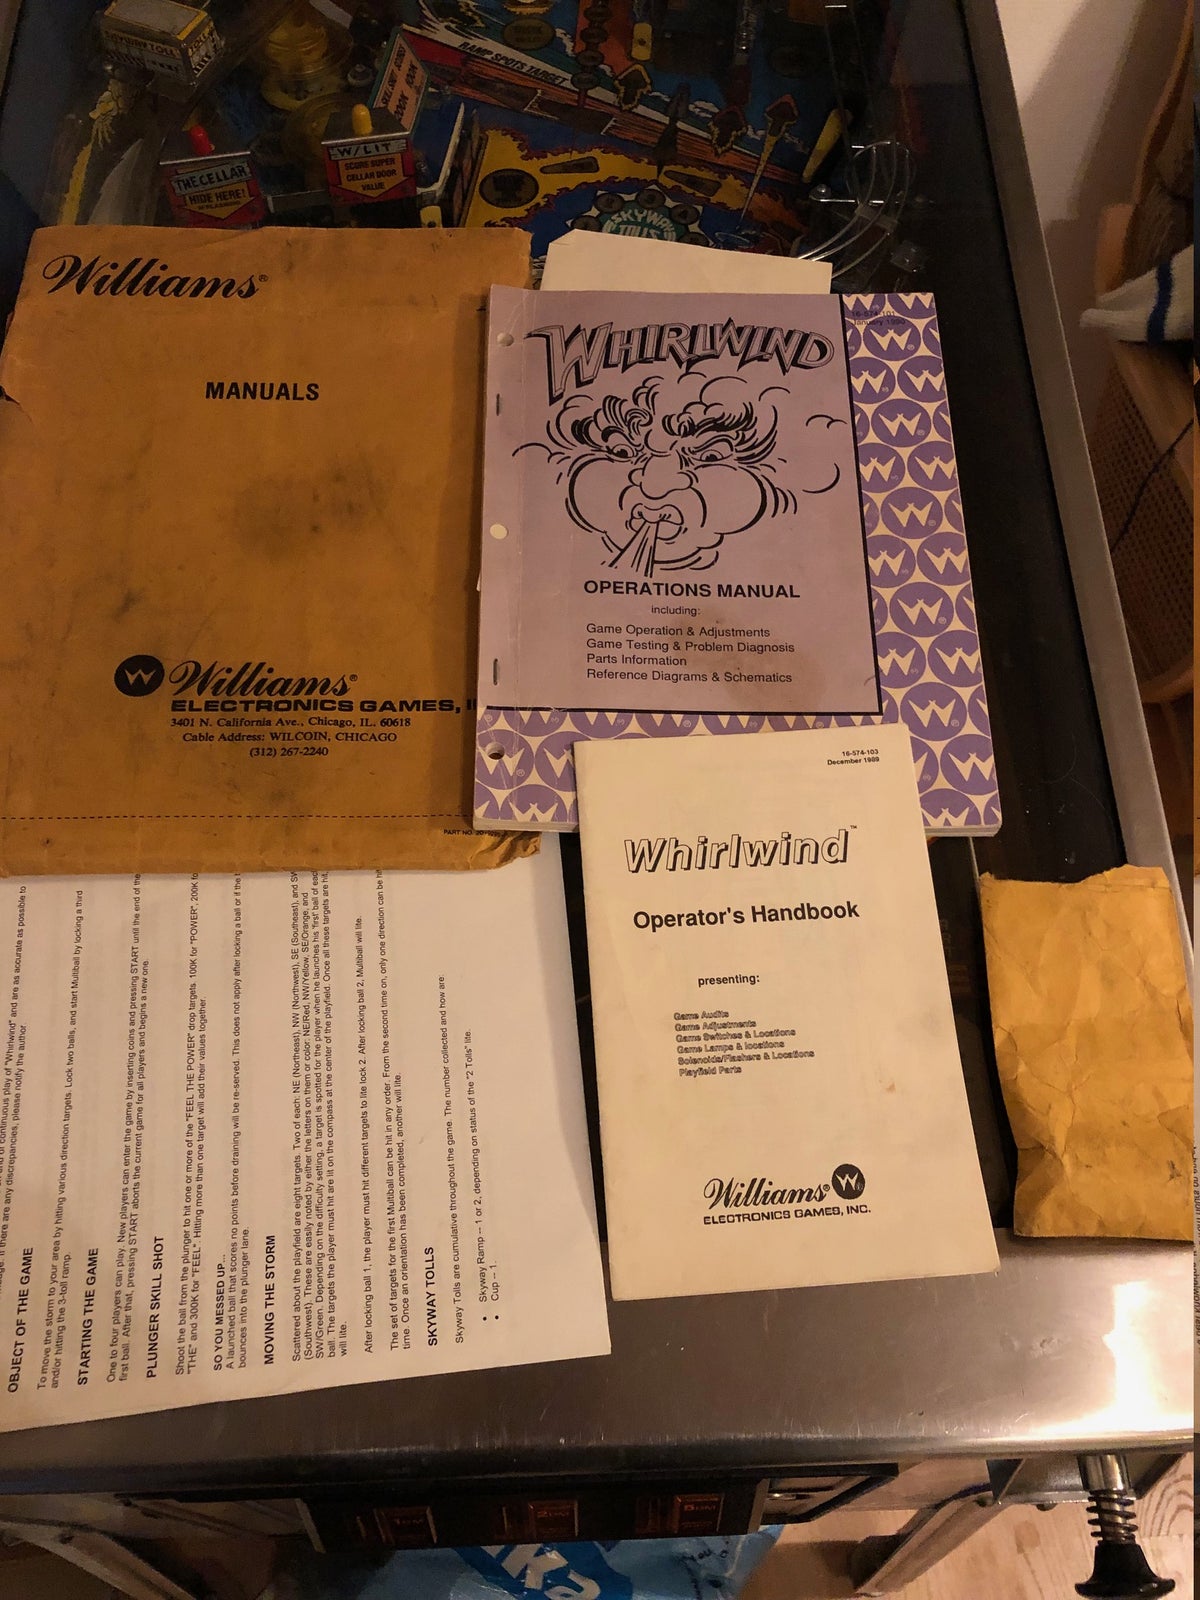 Williams Whirlwind, flippermaskine, God